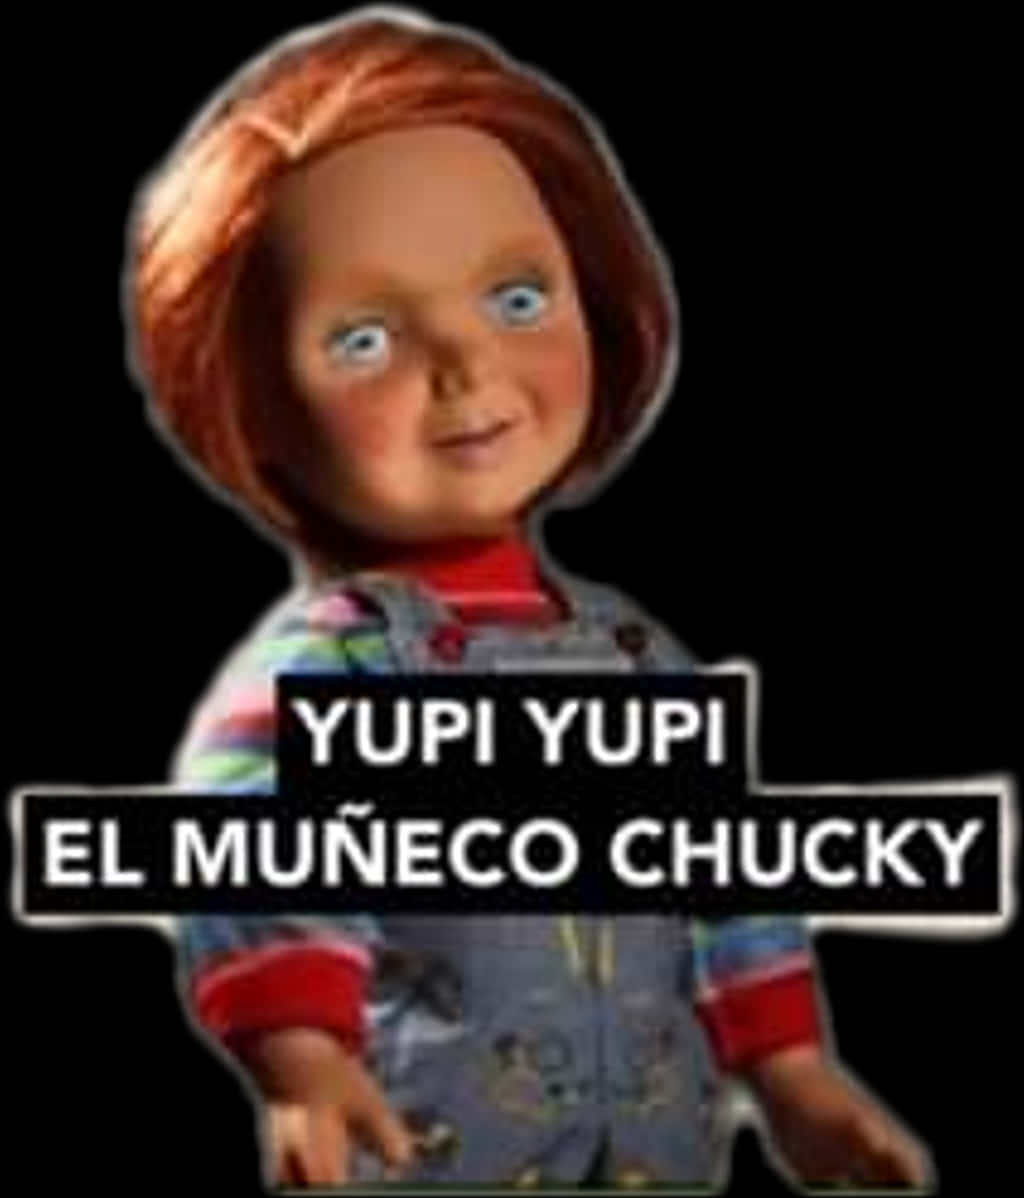 Chucky Doll Yupi Yupi El Muneco Chucky